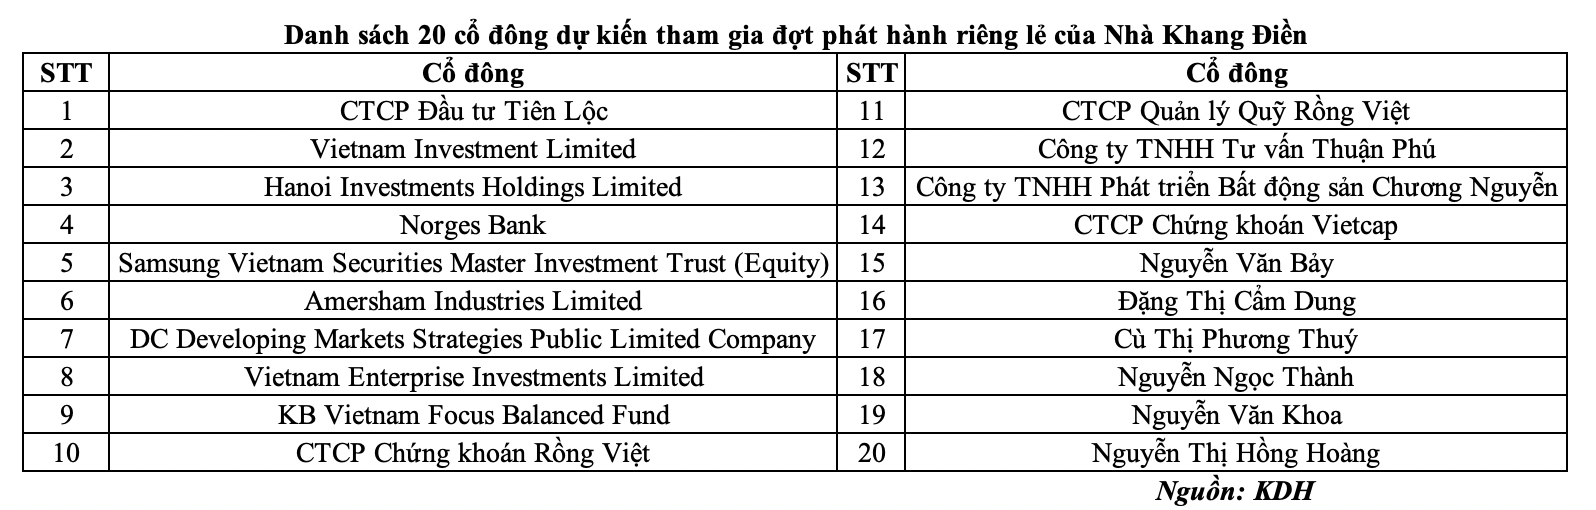 Nhà Khang Điền được chấp thuận chào bán hơn 110 triệu cổ phiếu cho 20 nhà đầu tư- Ảnh 1.